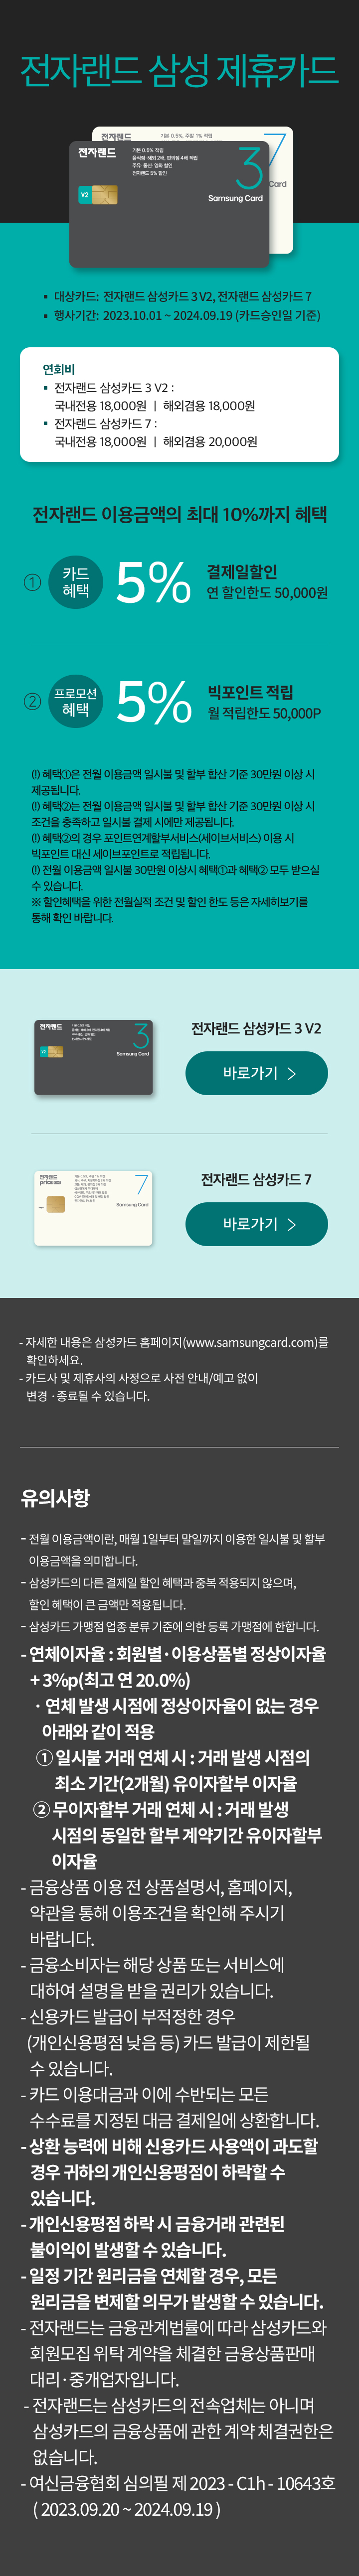 전자랜드 삼성 제휴카드